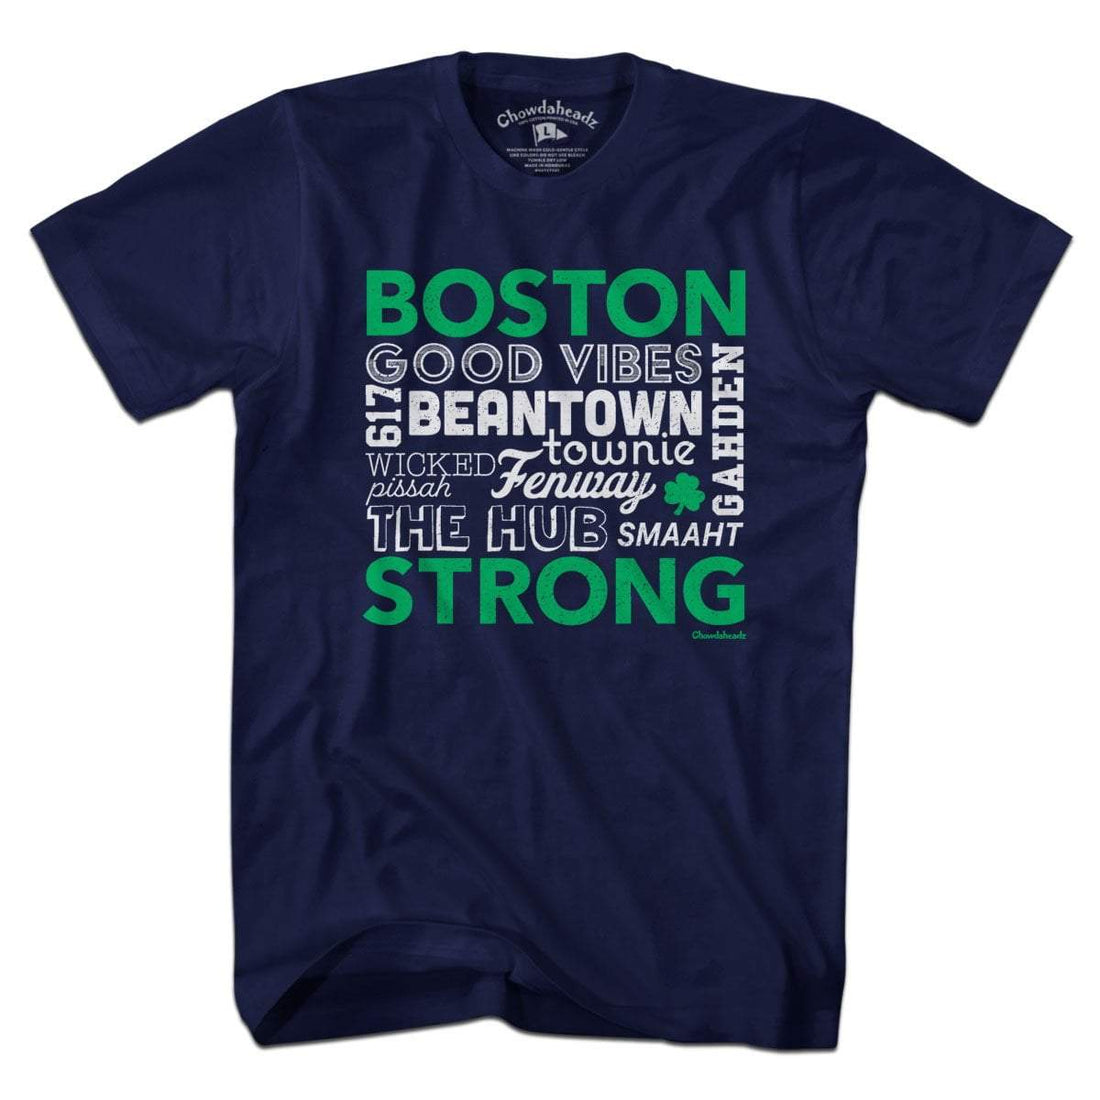 All Things Boston T-Shirt - Chowdaheadz